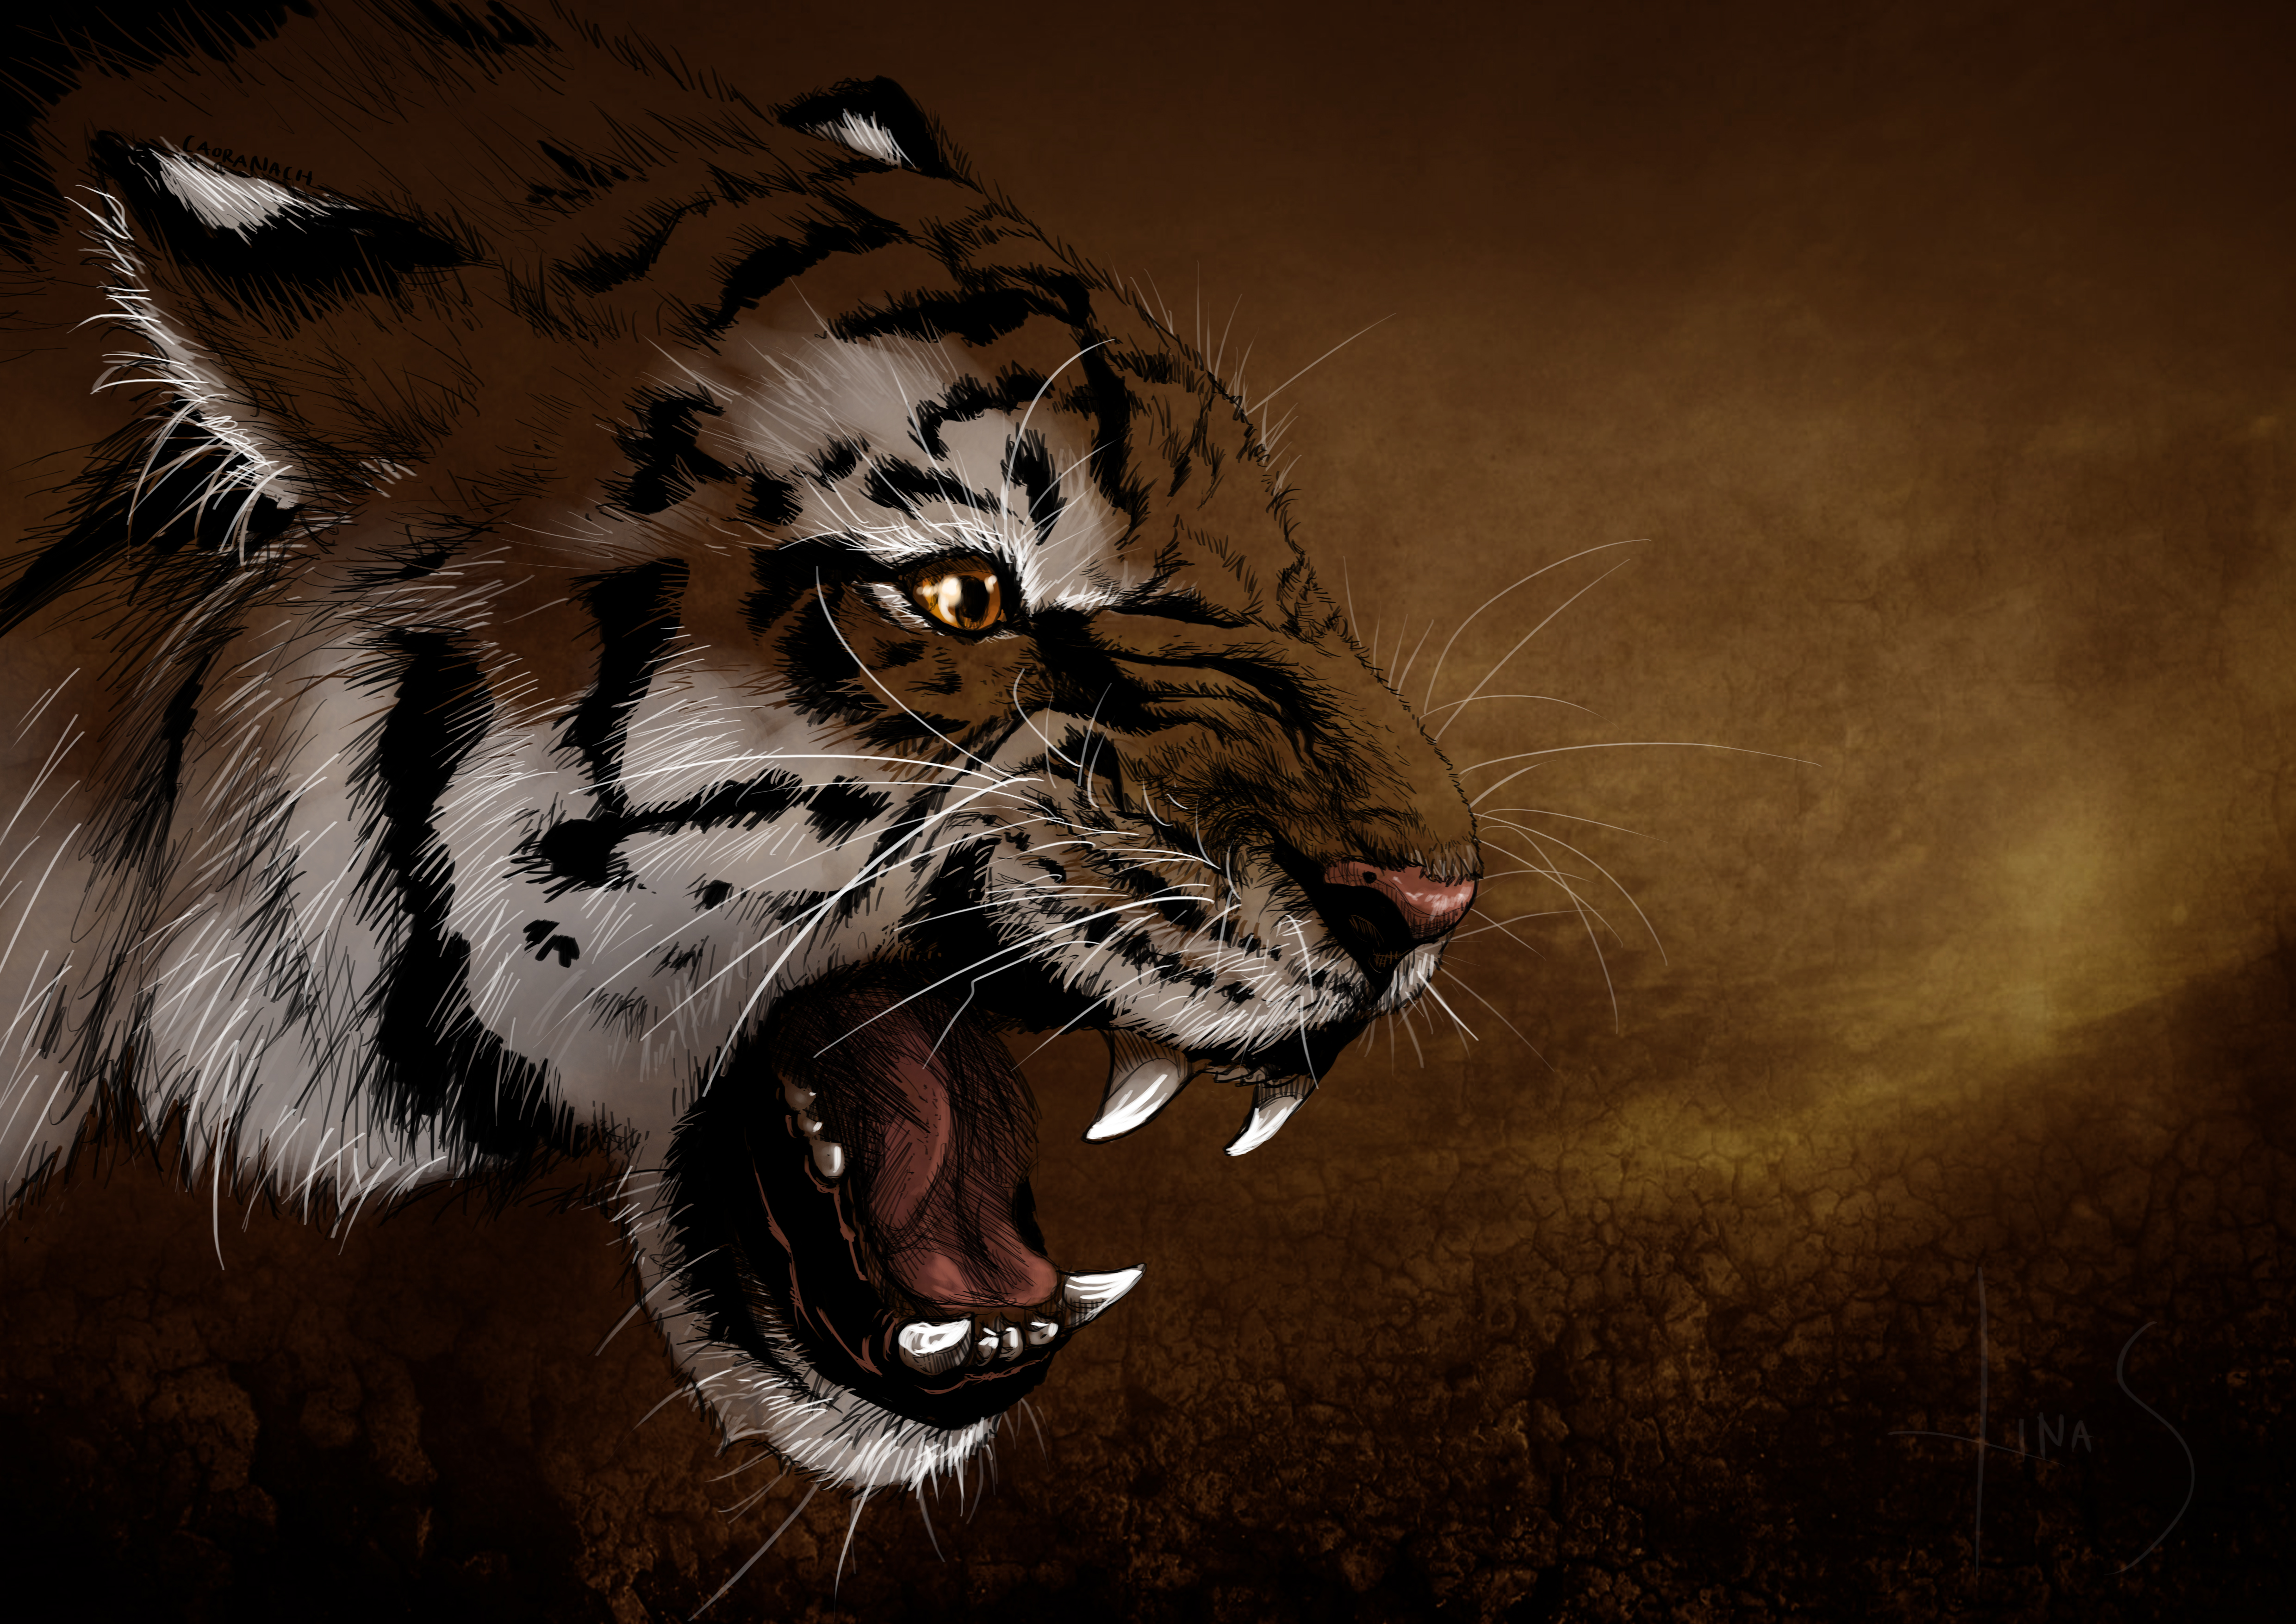 Papeis de parede Tigre Fauve Ver Rictus Focinho Dentes 3D Gráfica